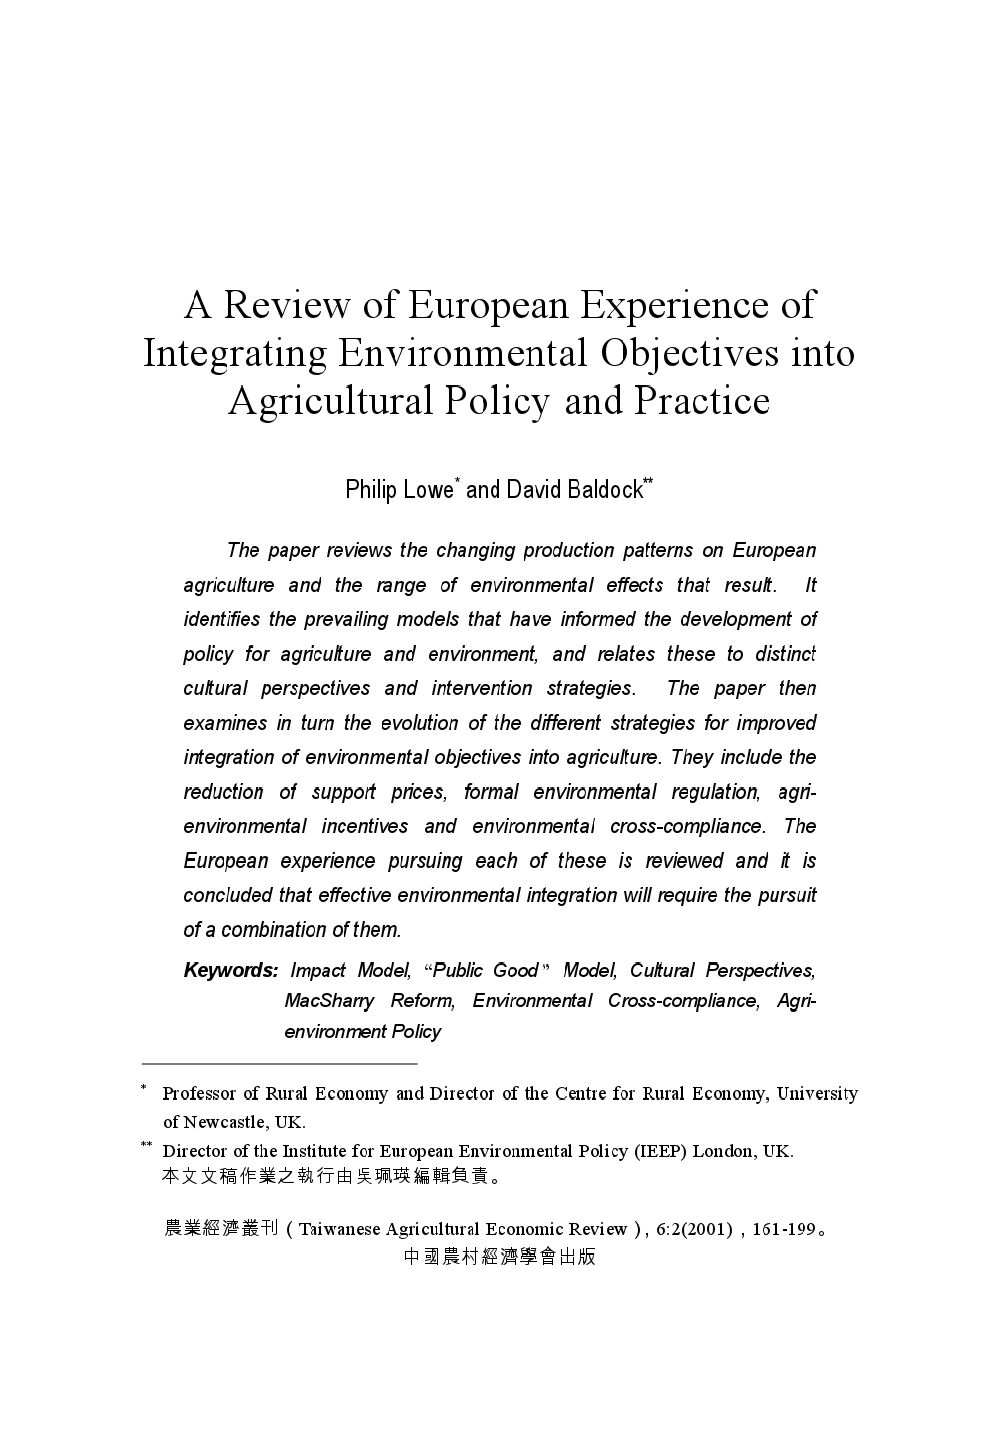 整合環境目標於農業政策及經營之歐洲經驗回顧.jpg